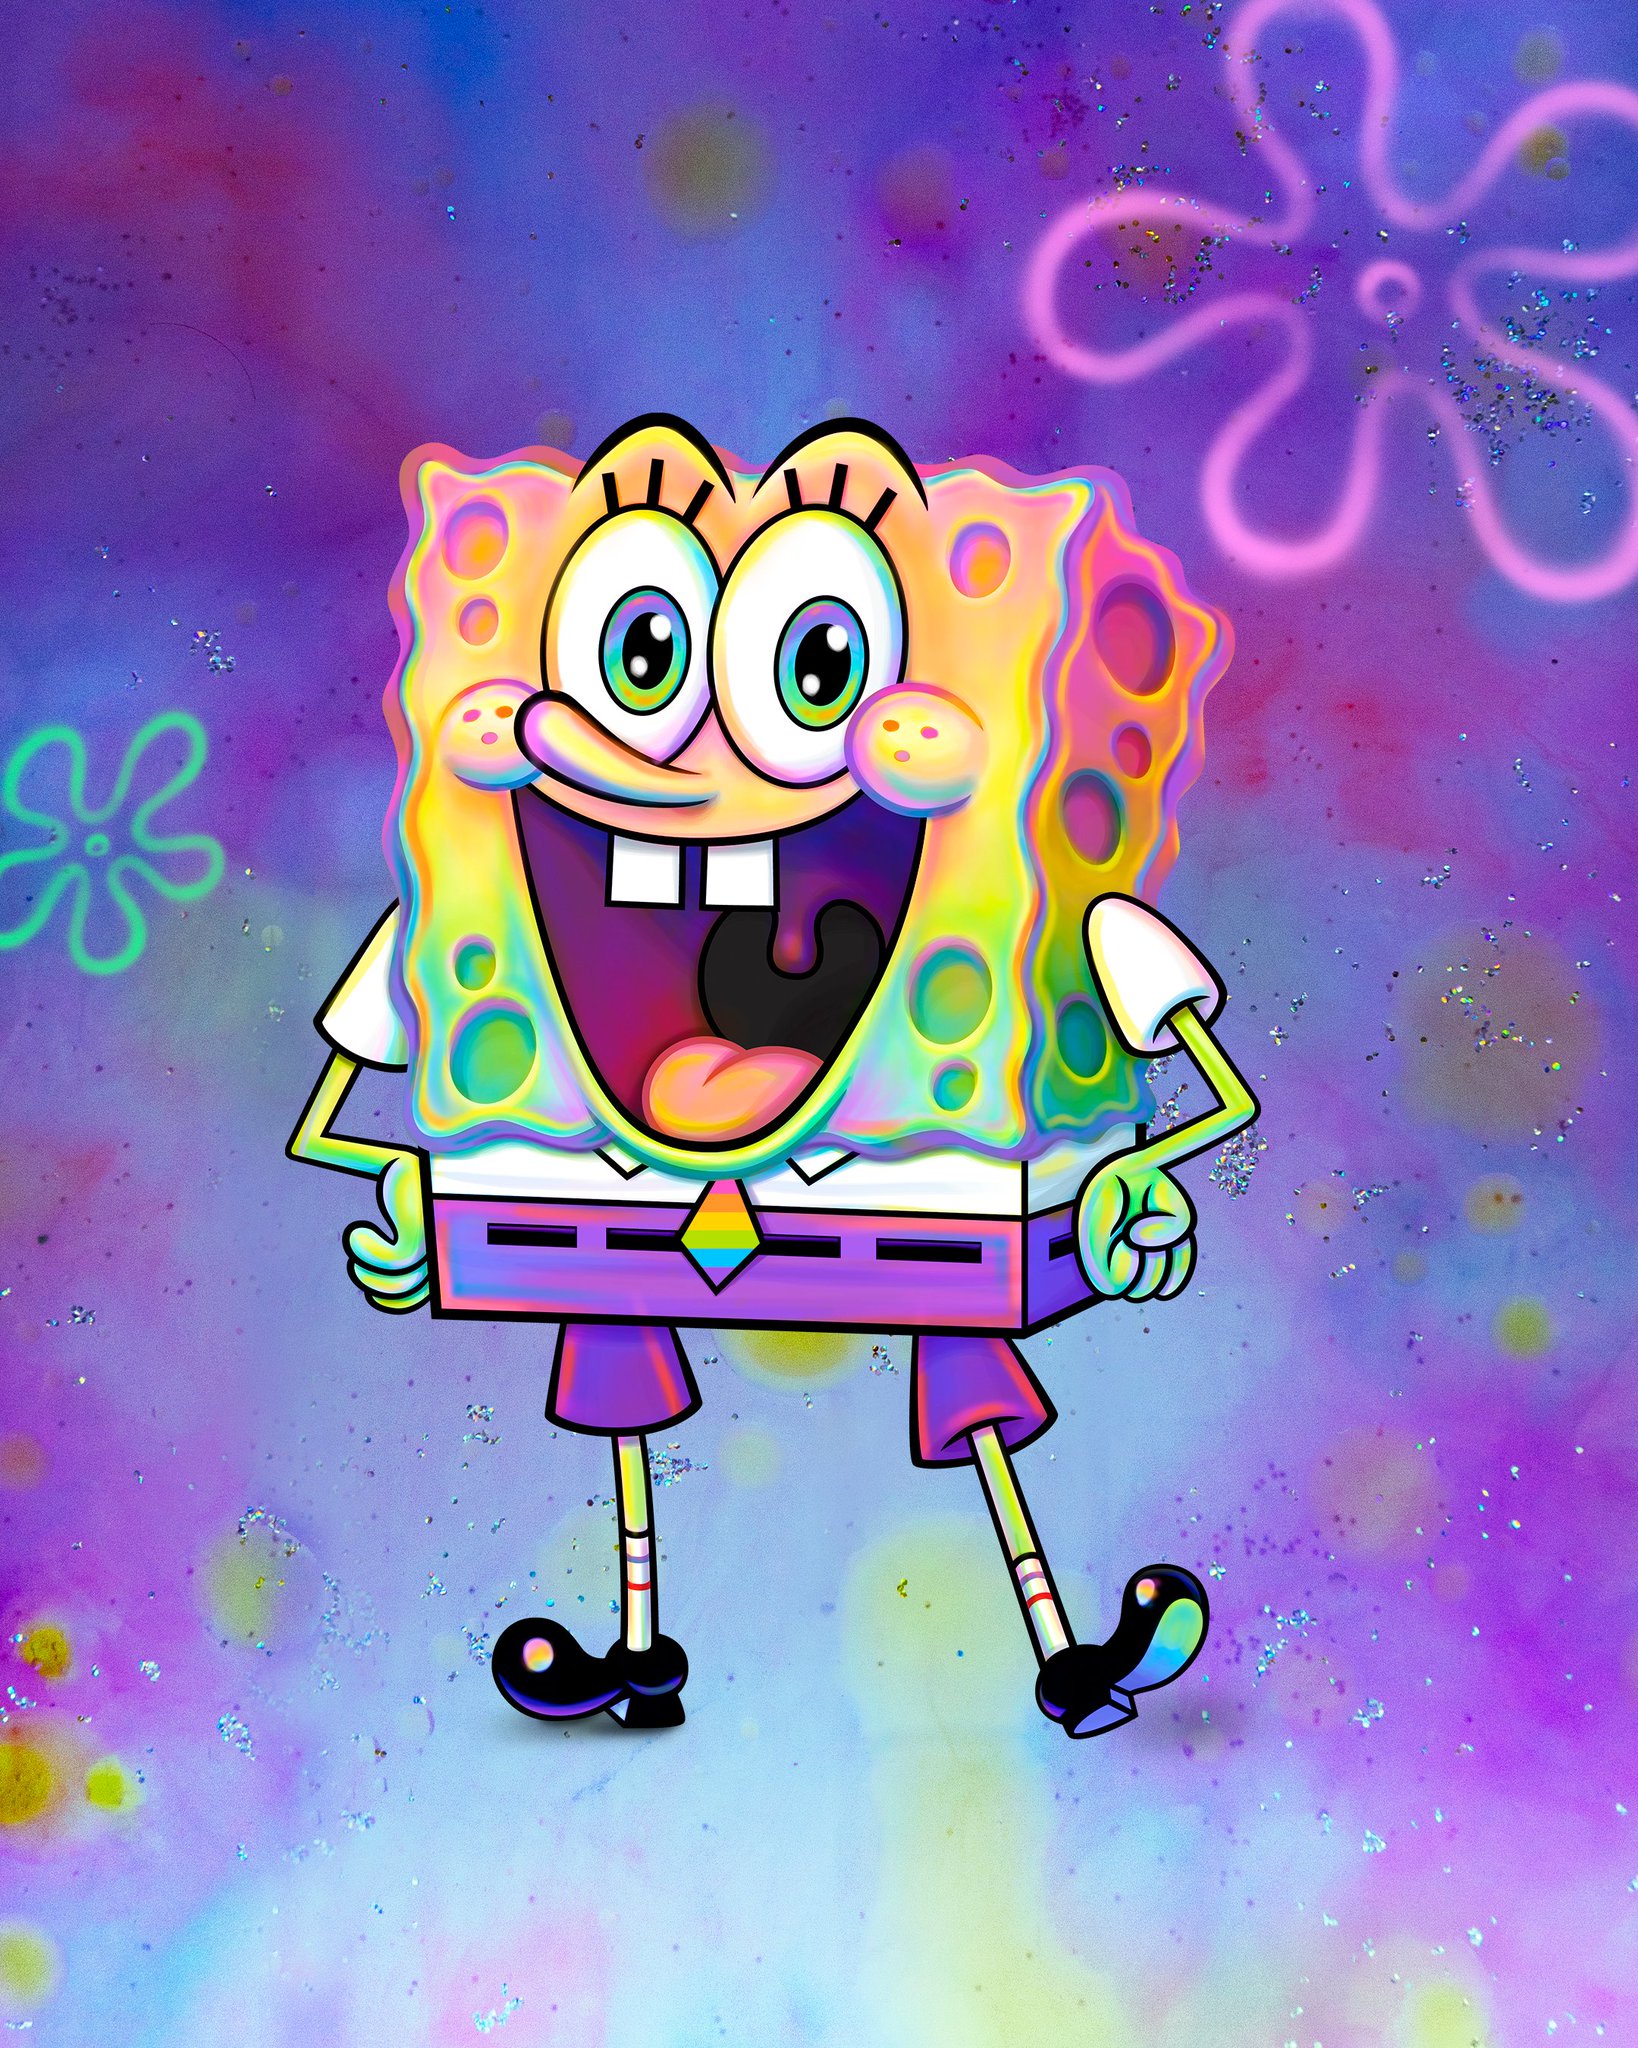 Nickelodeon confirma que Bob Esponja forma parte de la comunidad LGBT+